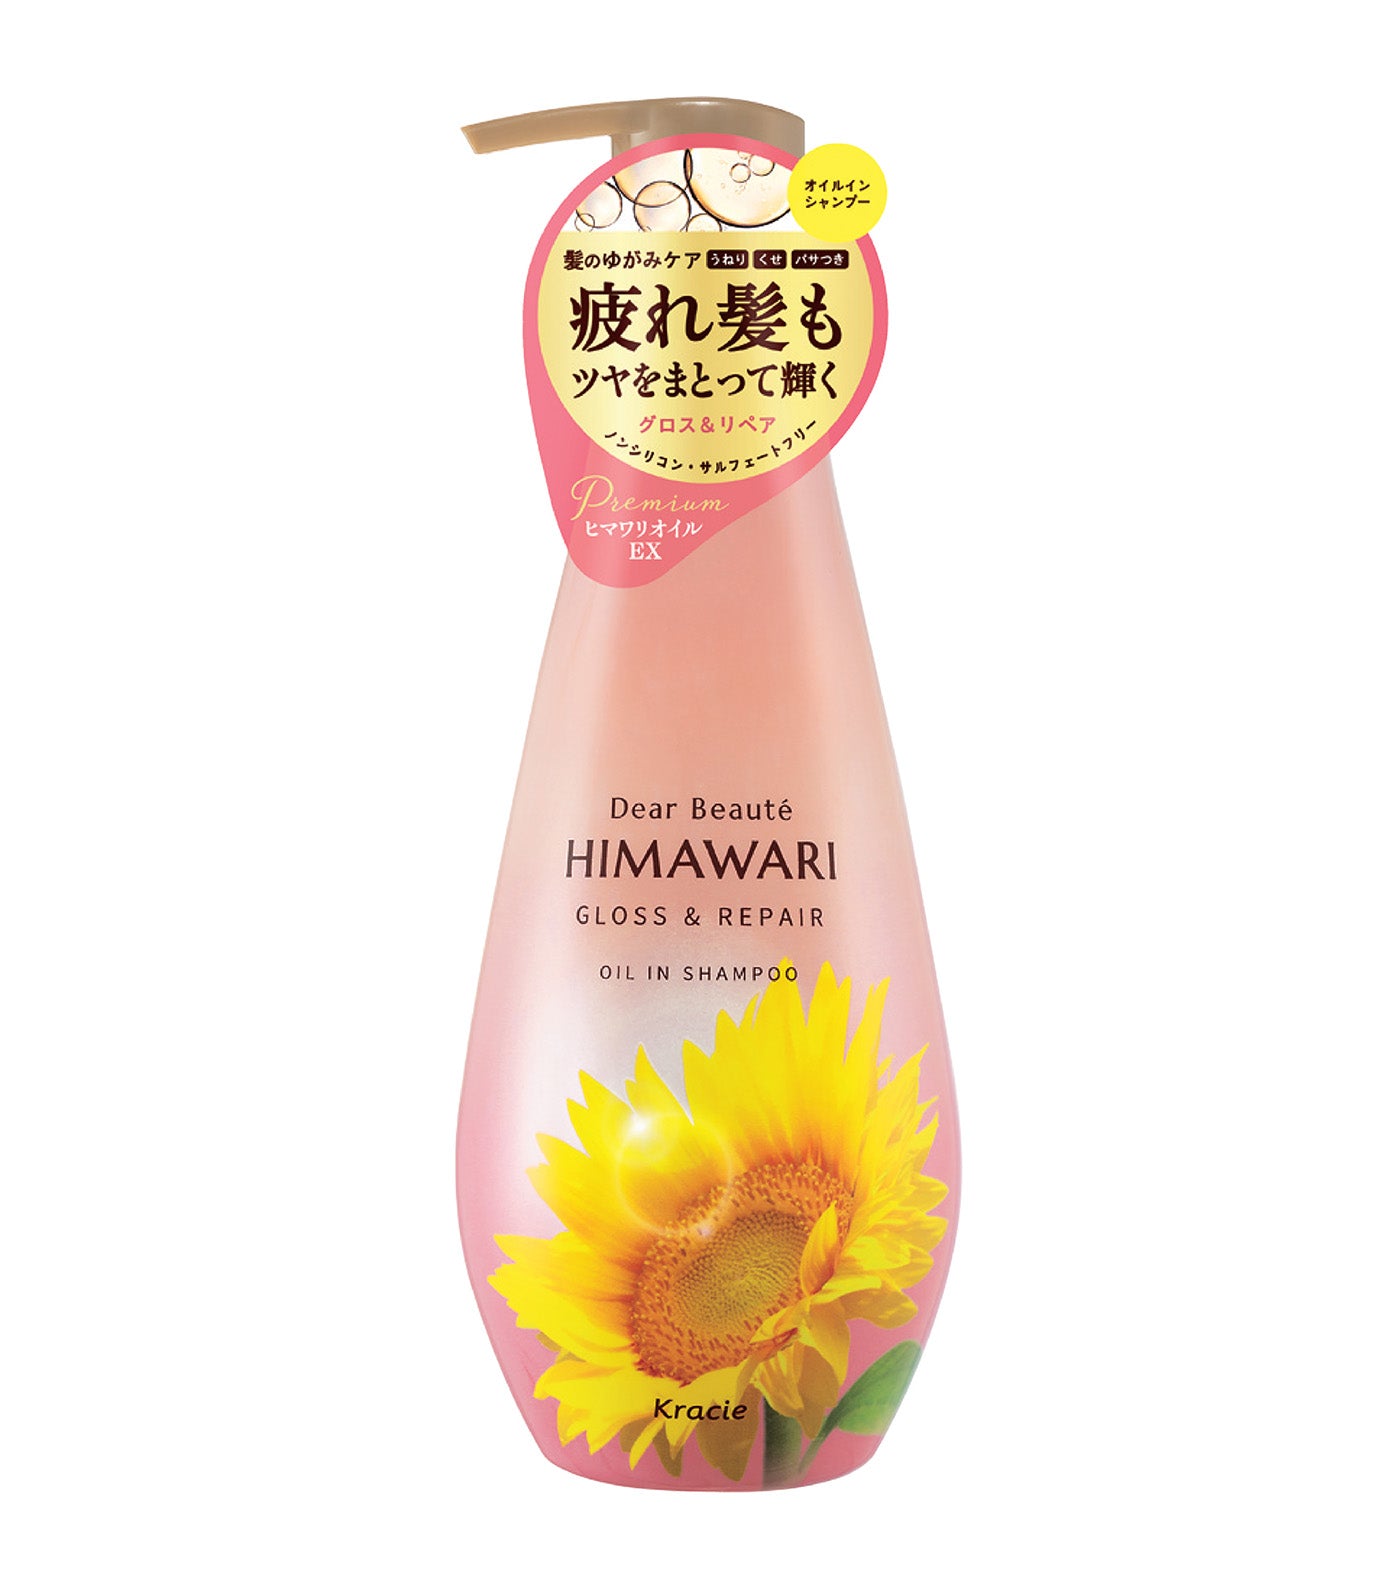 Dear Beaute Himawari Gloss & Repair Oil In Shampoo